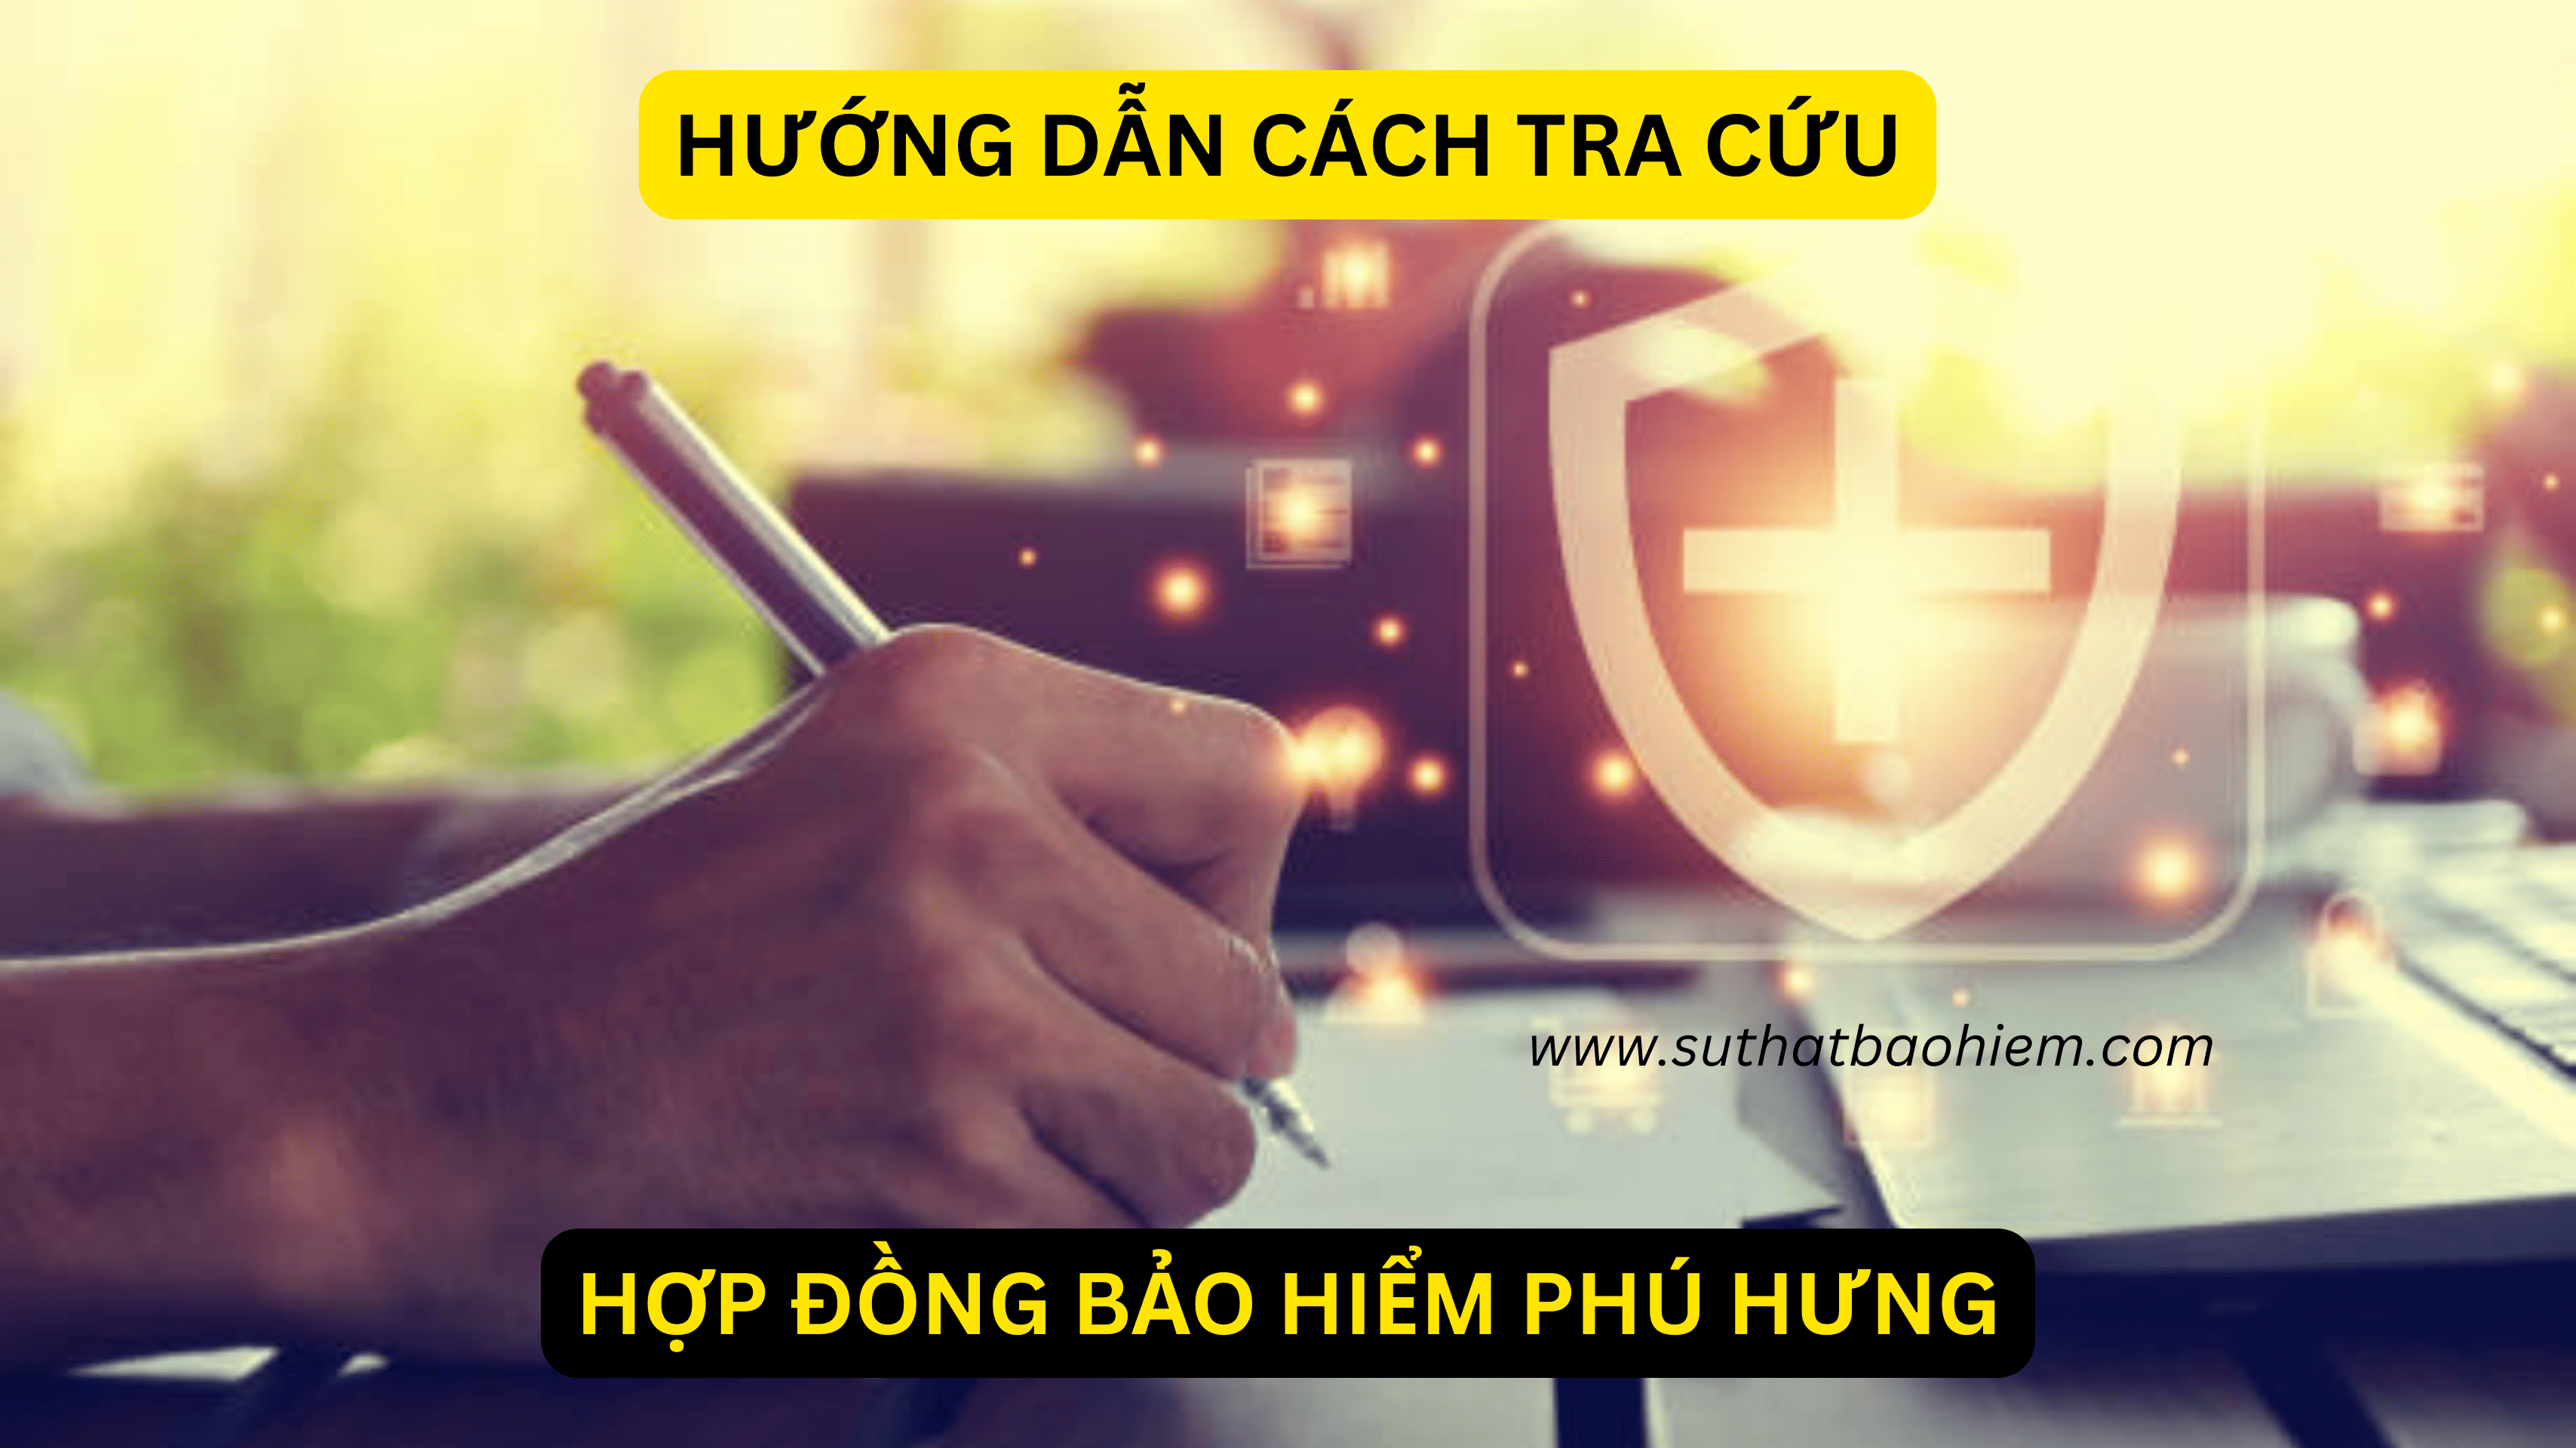 huong dan cach tra cuu hop dong bao hiem phu hung life